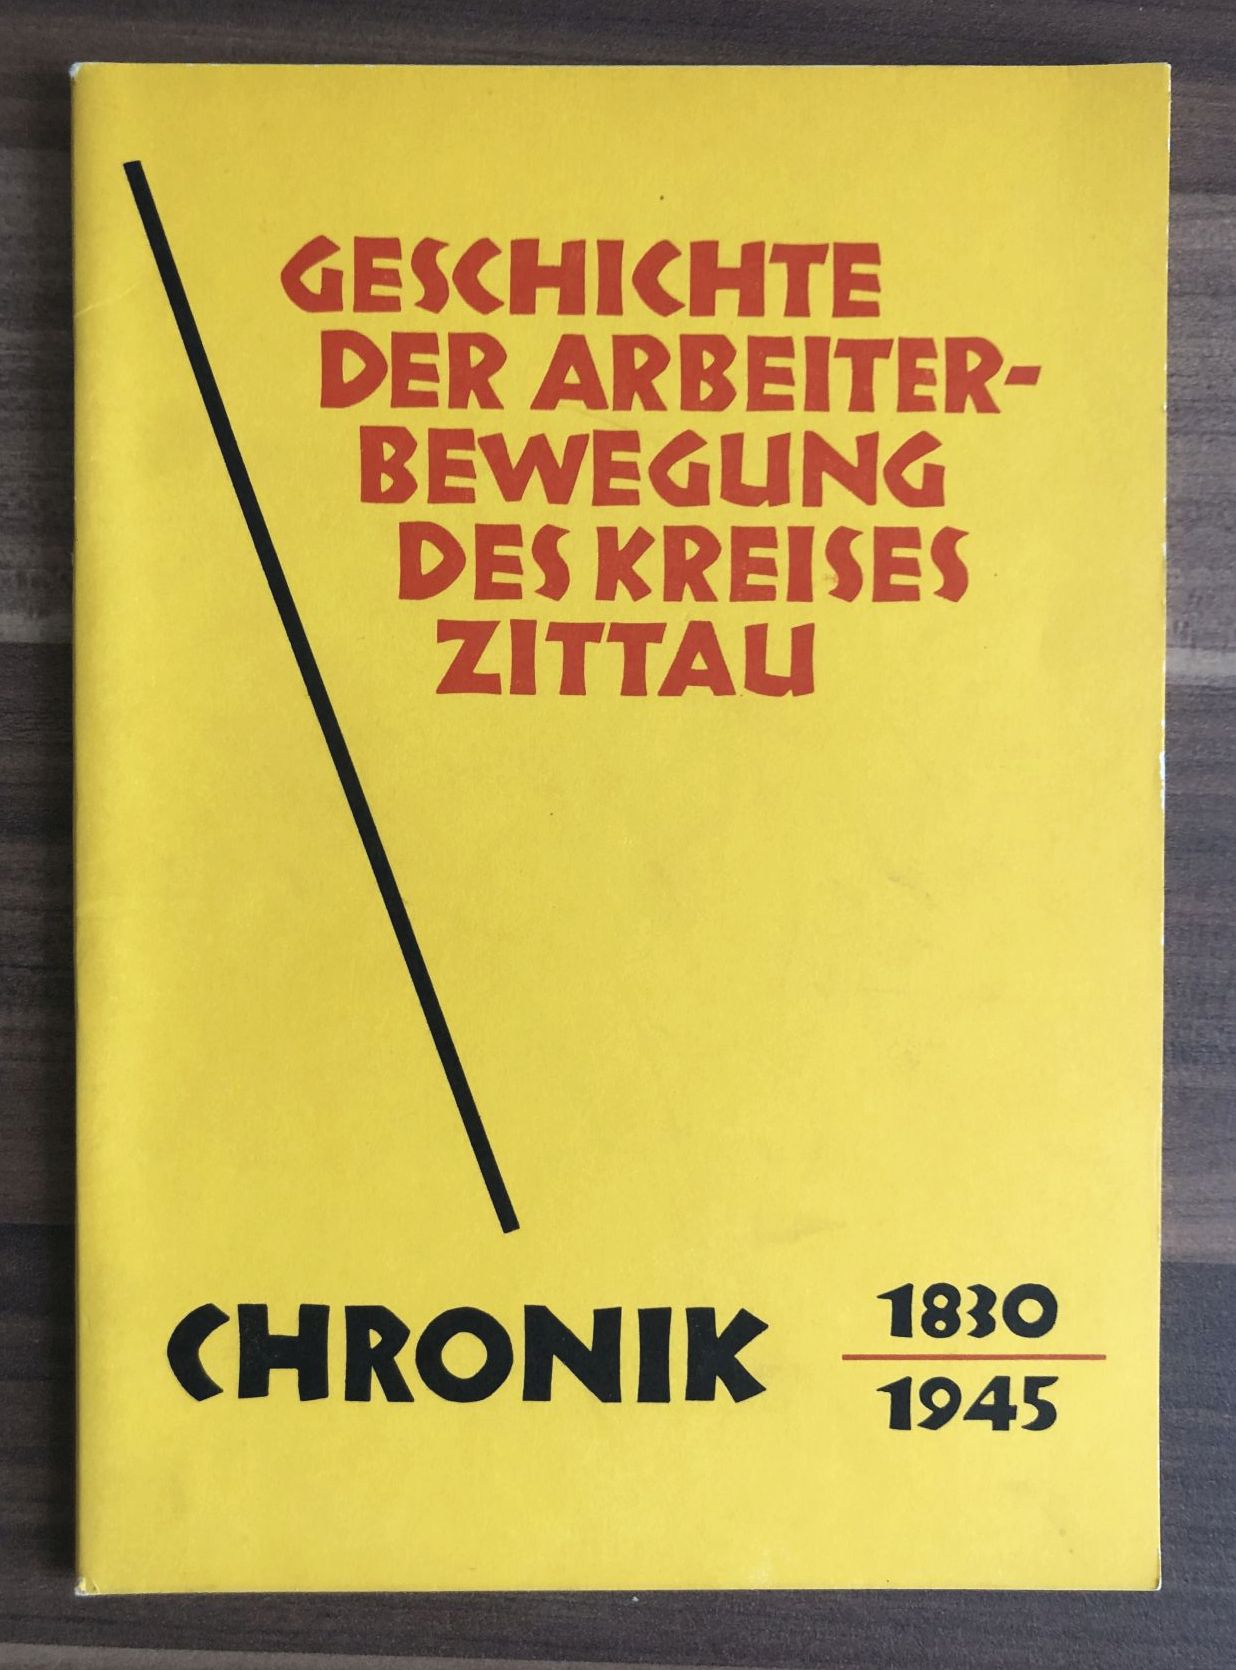 Altes Buch 1830 1945 Geschichte der Arbeiterbewegung des Kreises Zittau